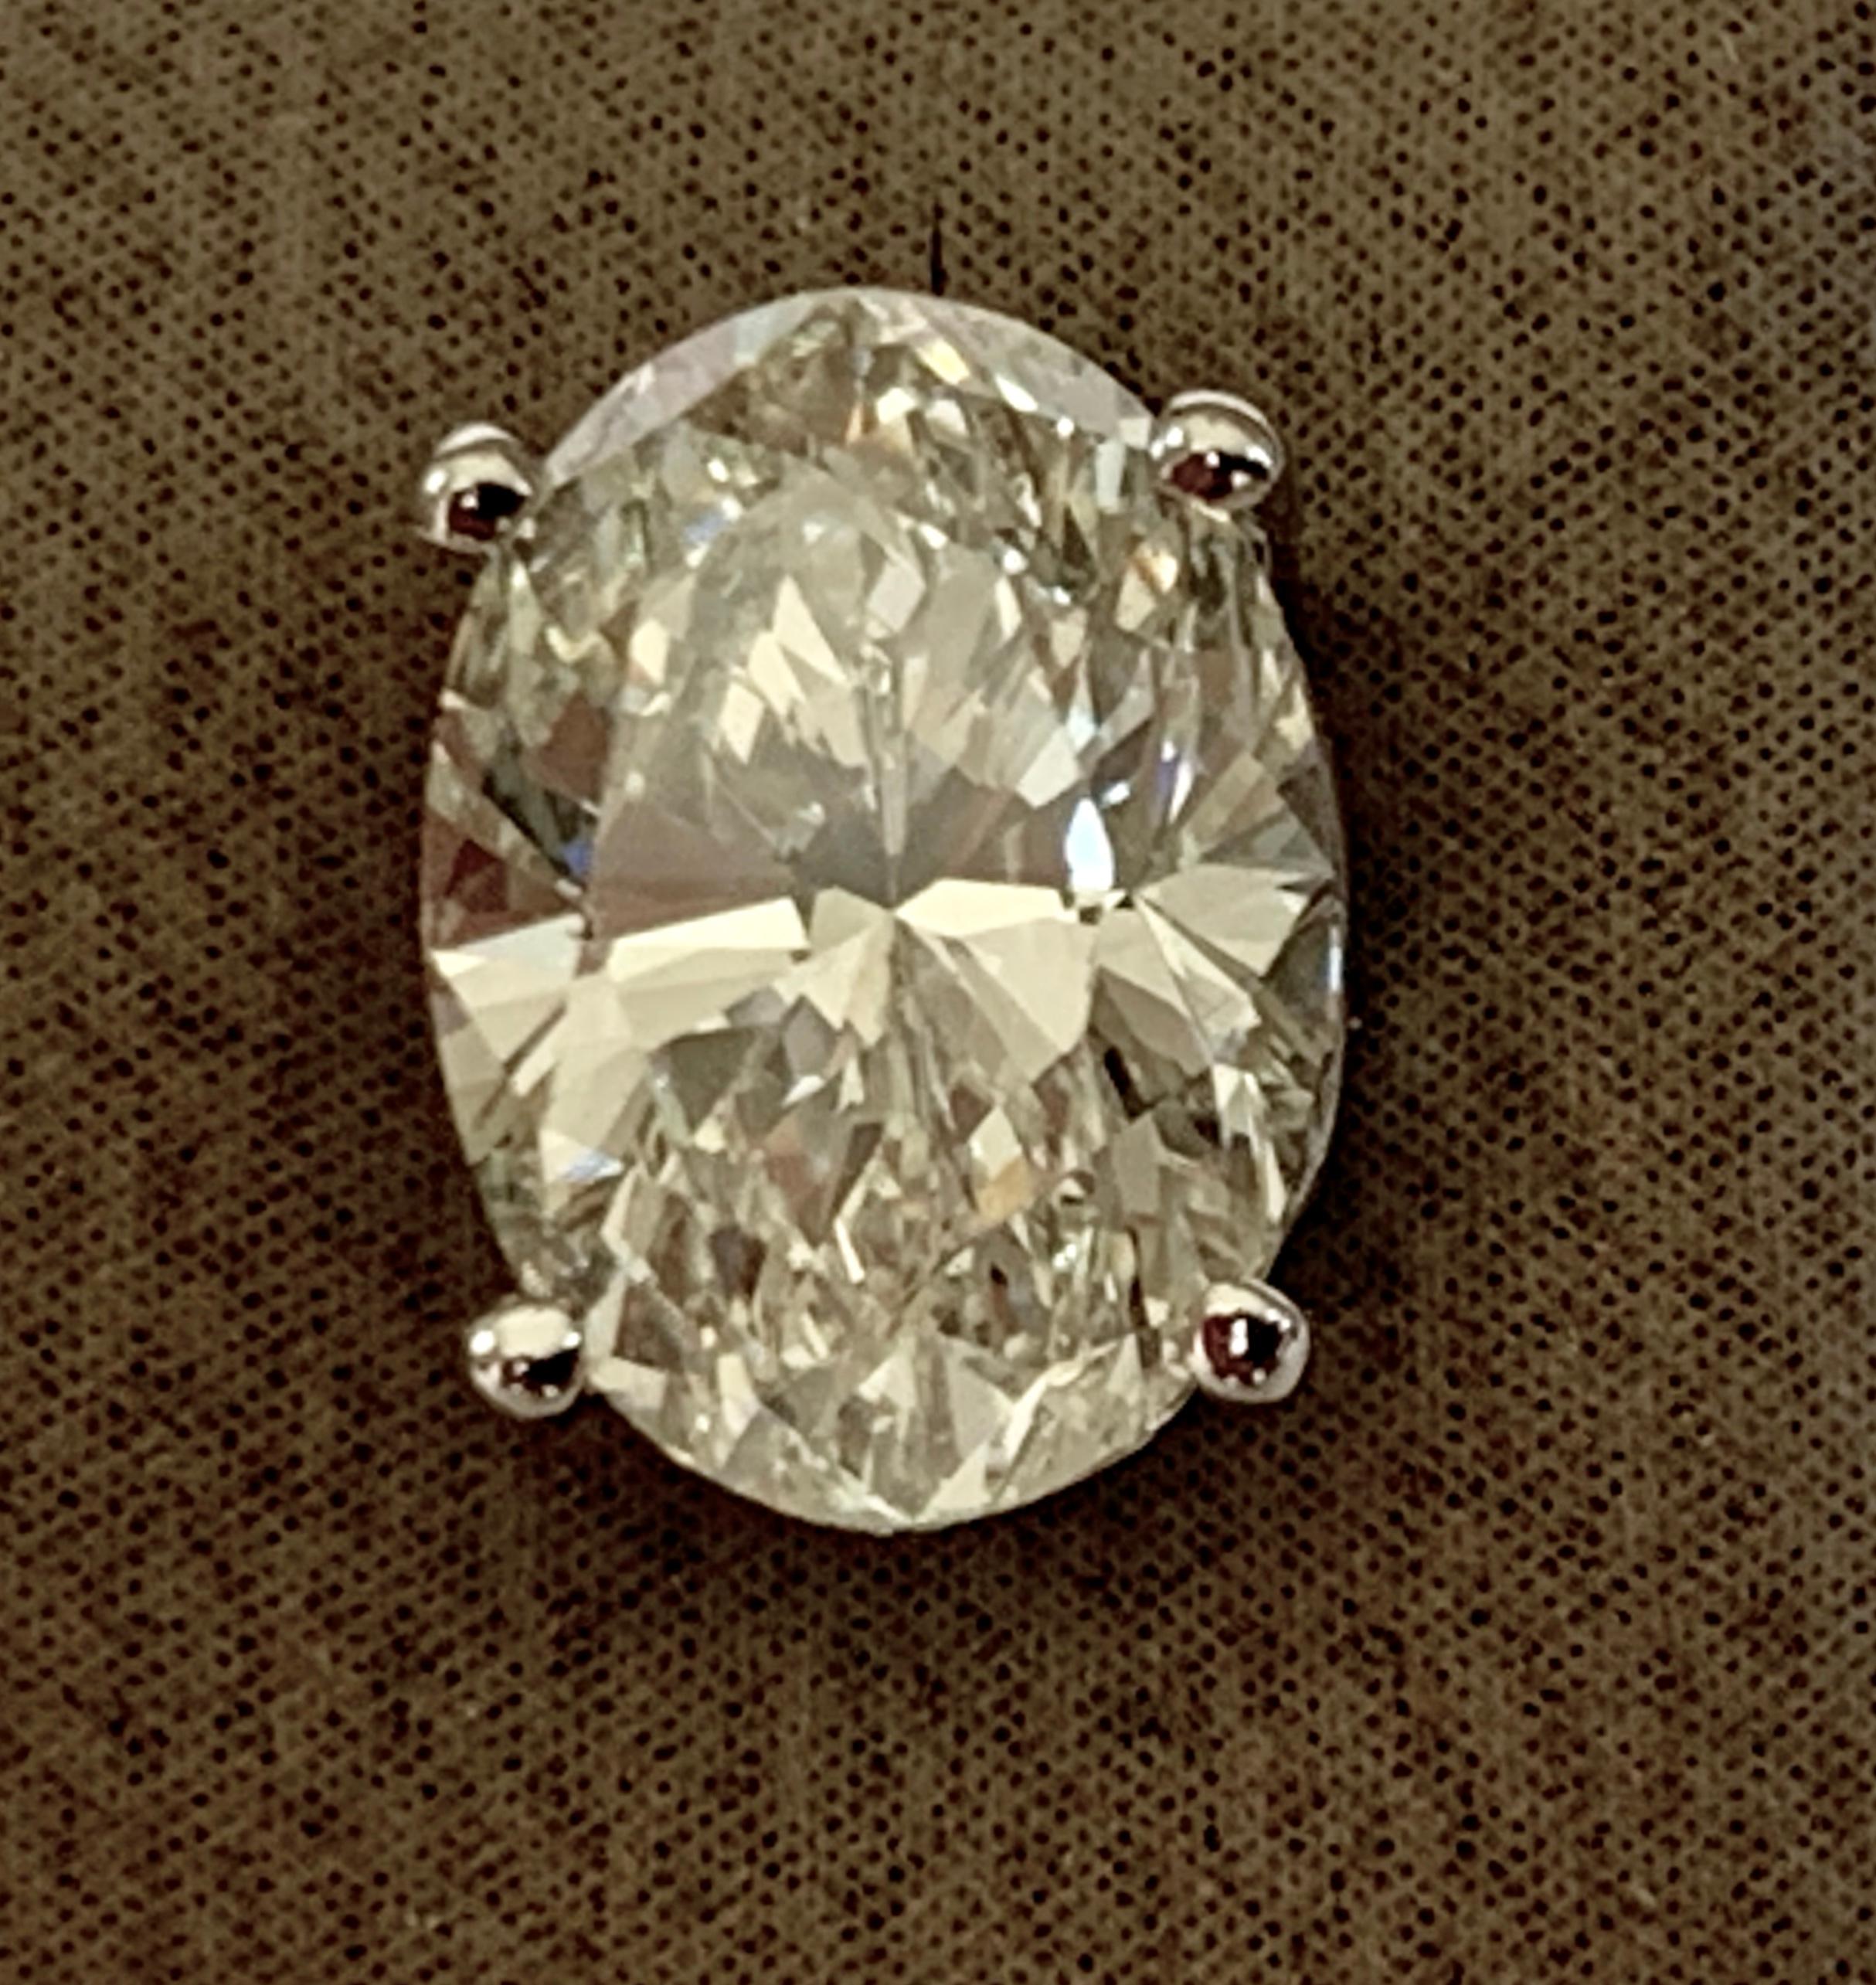 Diese atemberaubenden Diamant-Ohrstecker verfügen über eine 4-Zacken-Korb-Fassung in glitzerndem 18-karätigem Weißgold. Die Ohrstecker enthalten 2 schillernde Diamanten im Ovalschliff mit einem Gesamtgewicht von 4,05 ct. Beide Steine K Farbe, vs2